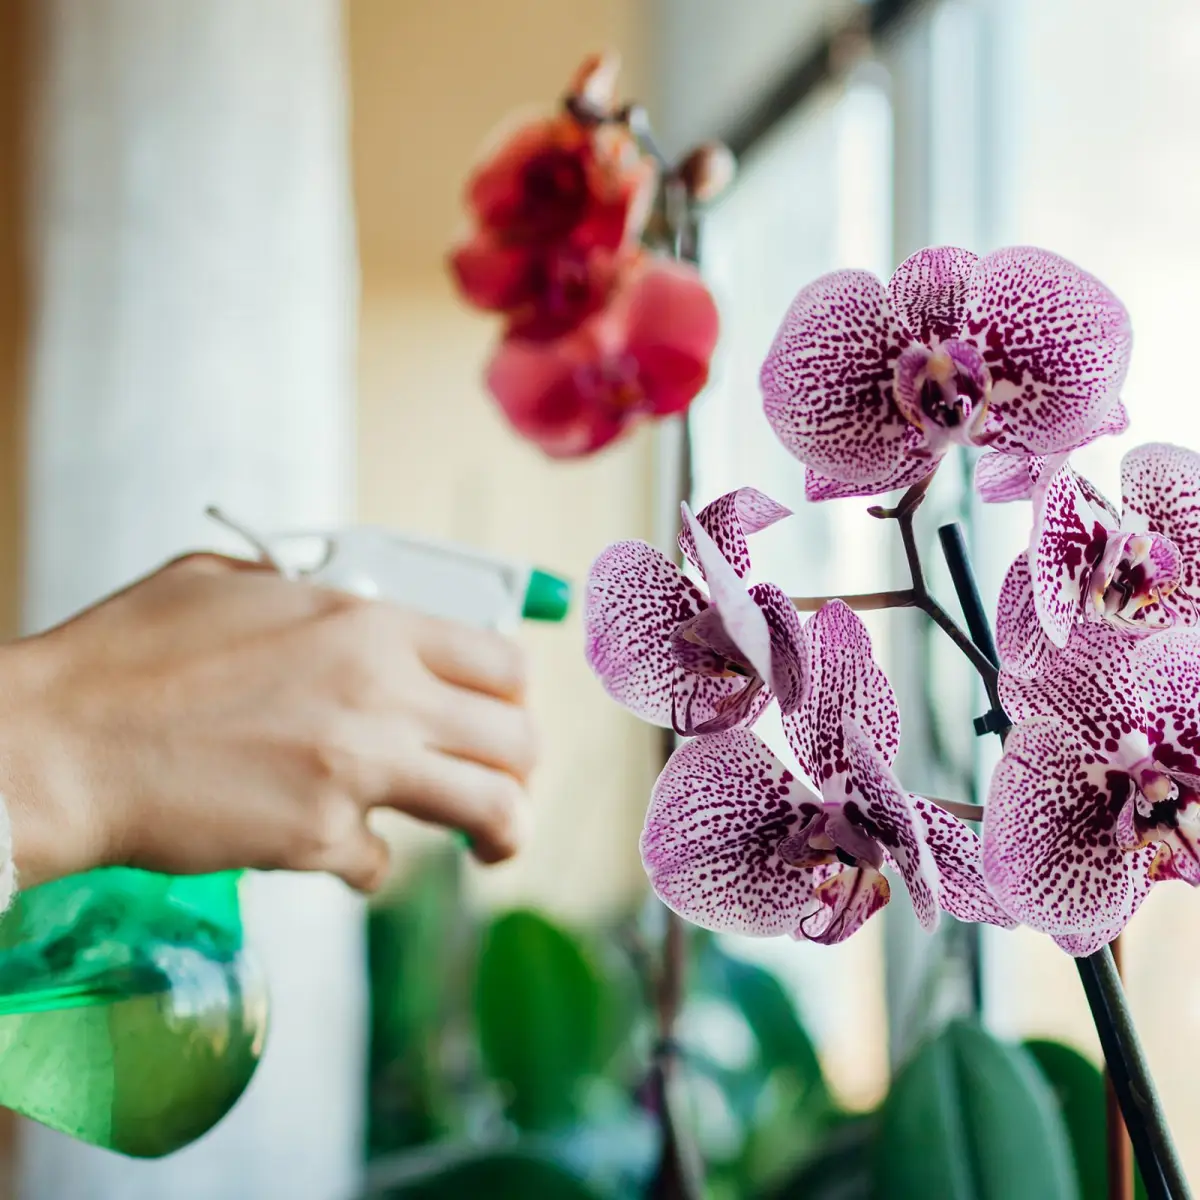 hausmittel wolllaeuse bekaempfen hortensien mann besprueht rosa orchidee gegen wolllaeuse